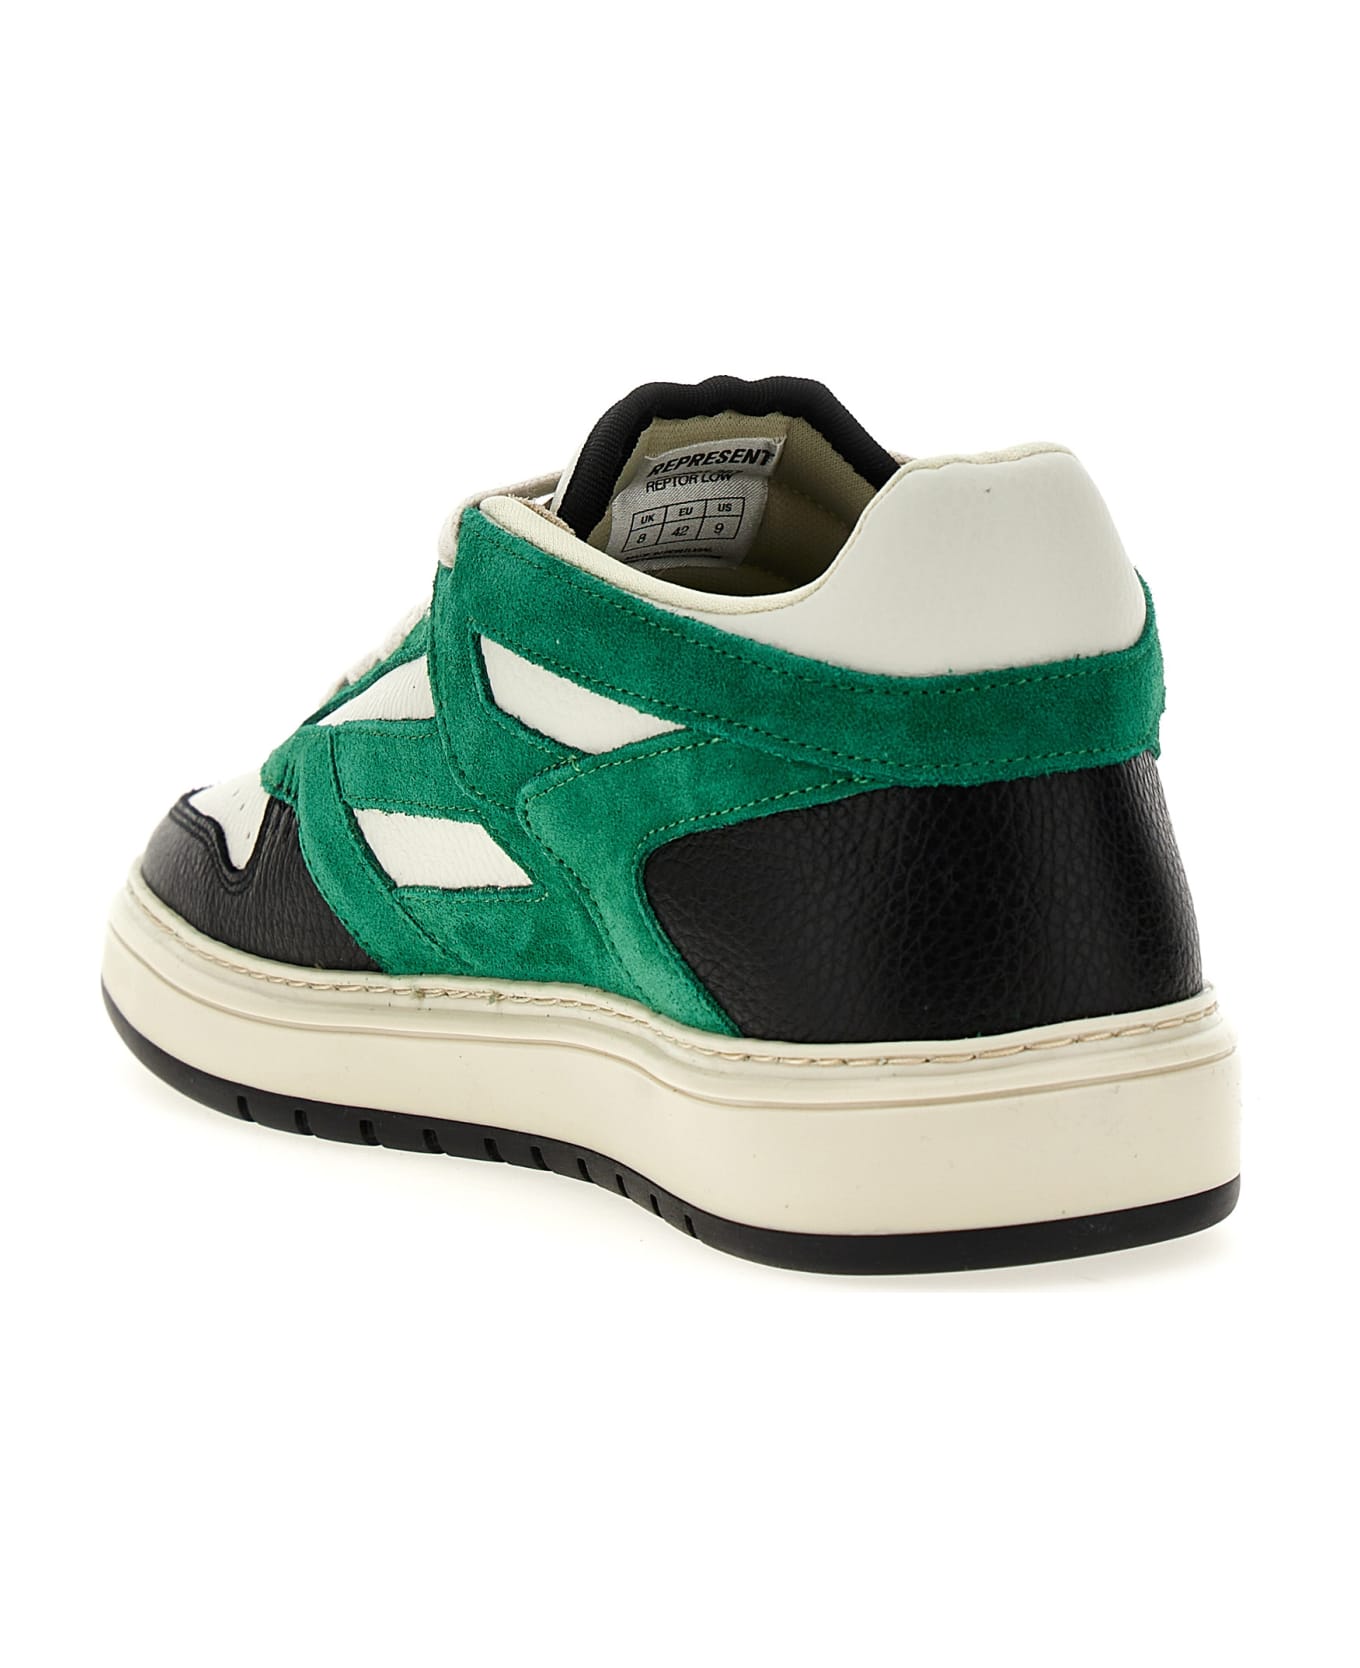 REPRESENT 'reptor' Sneakers - Green